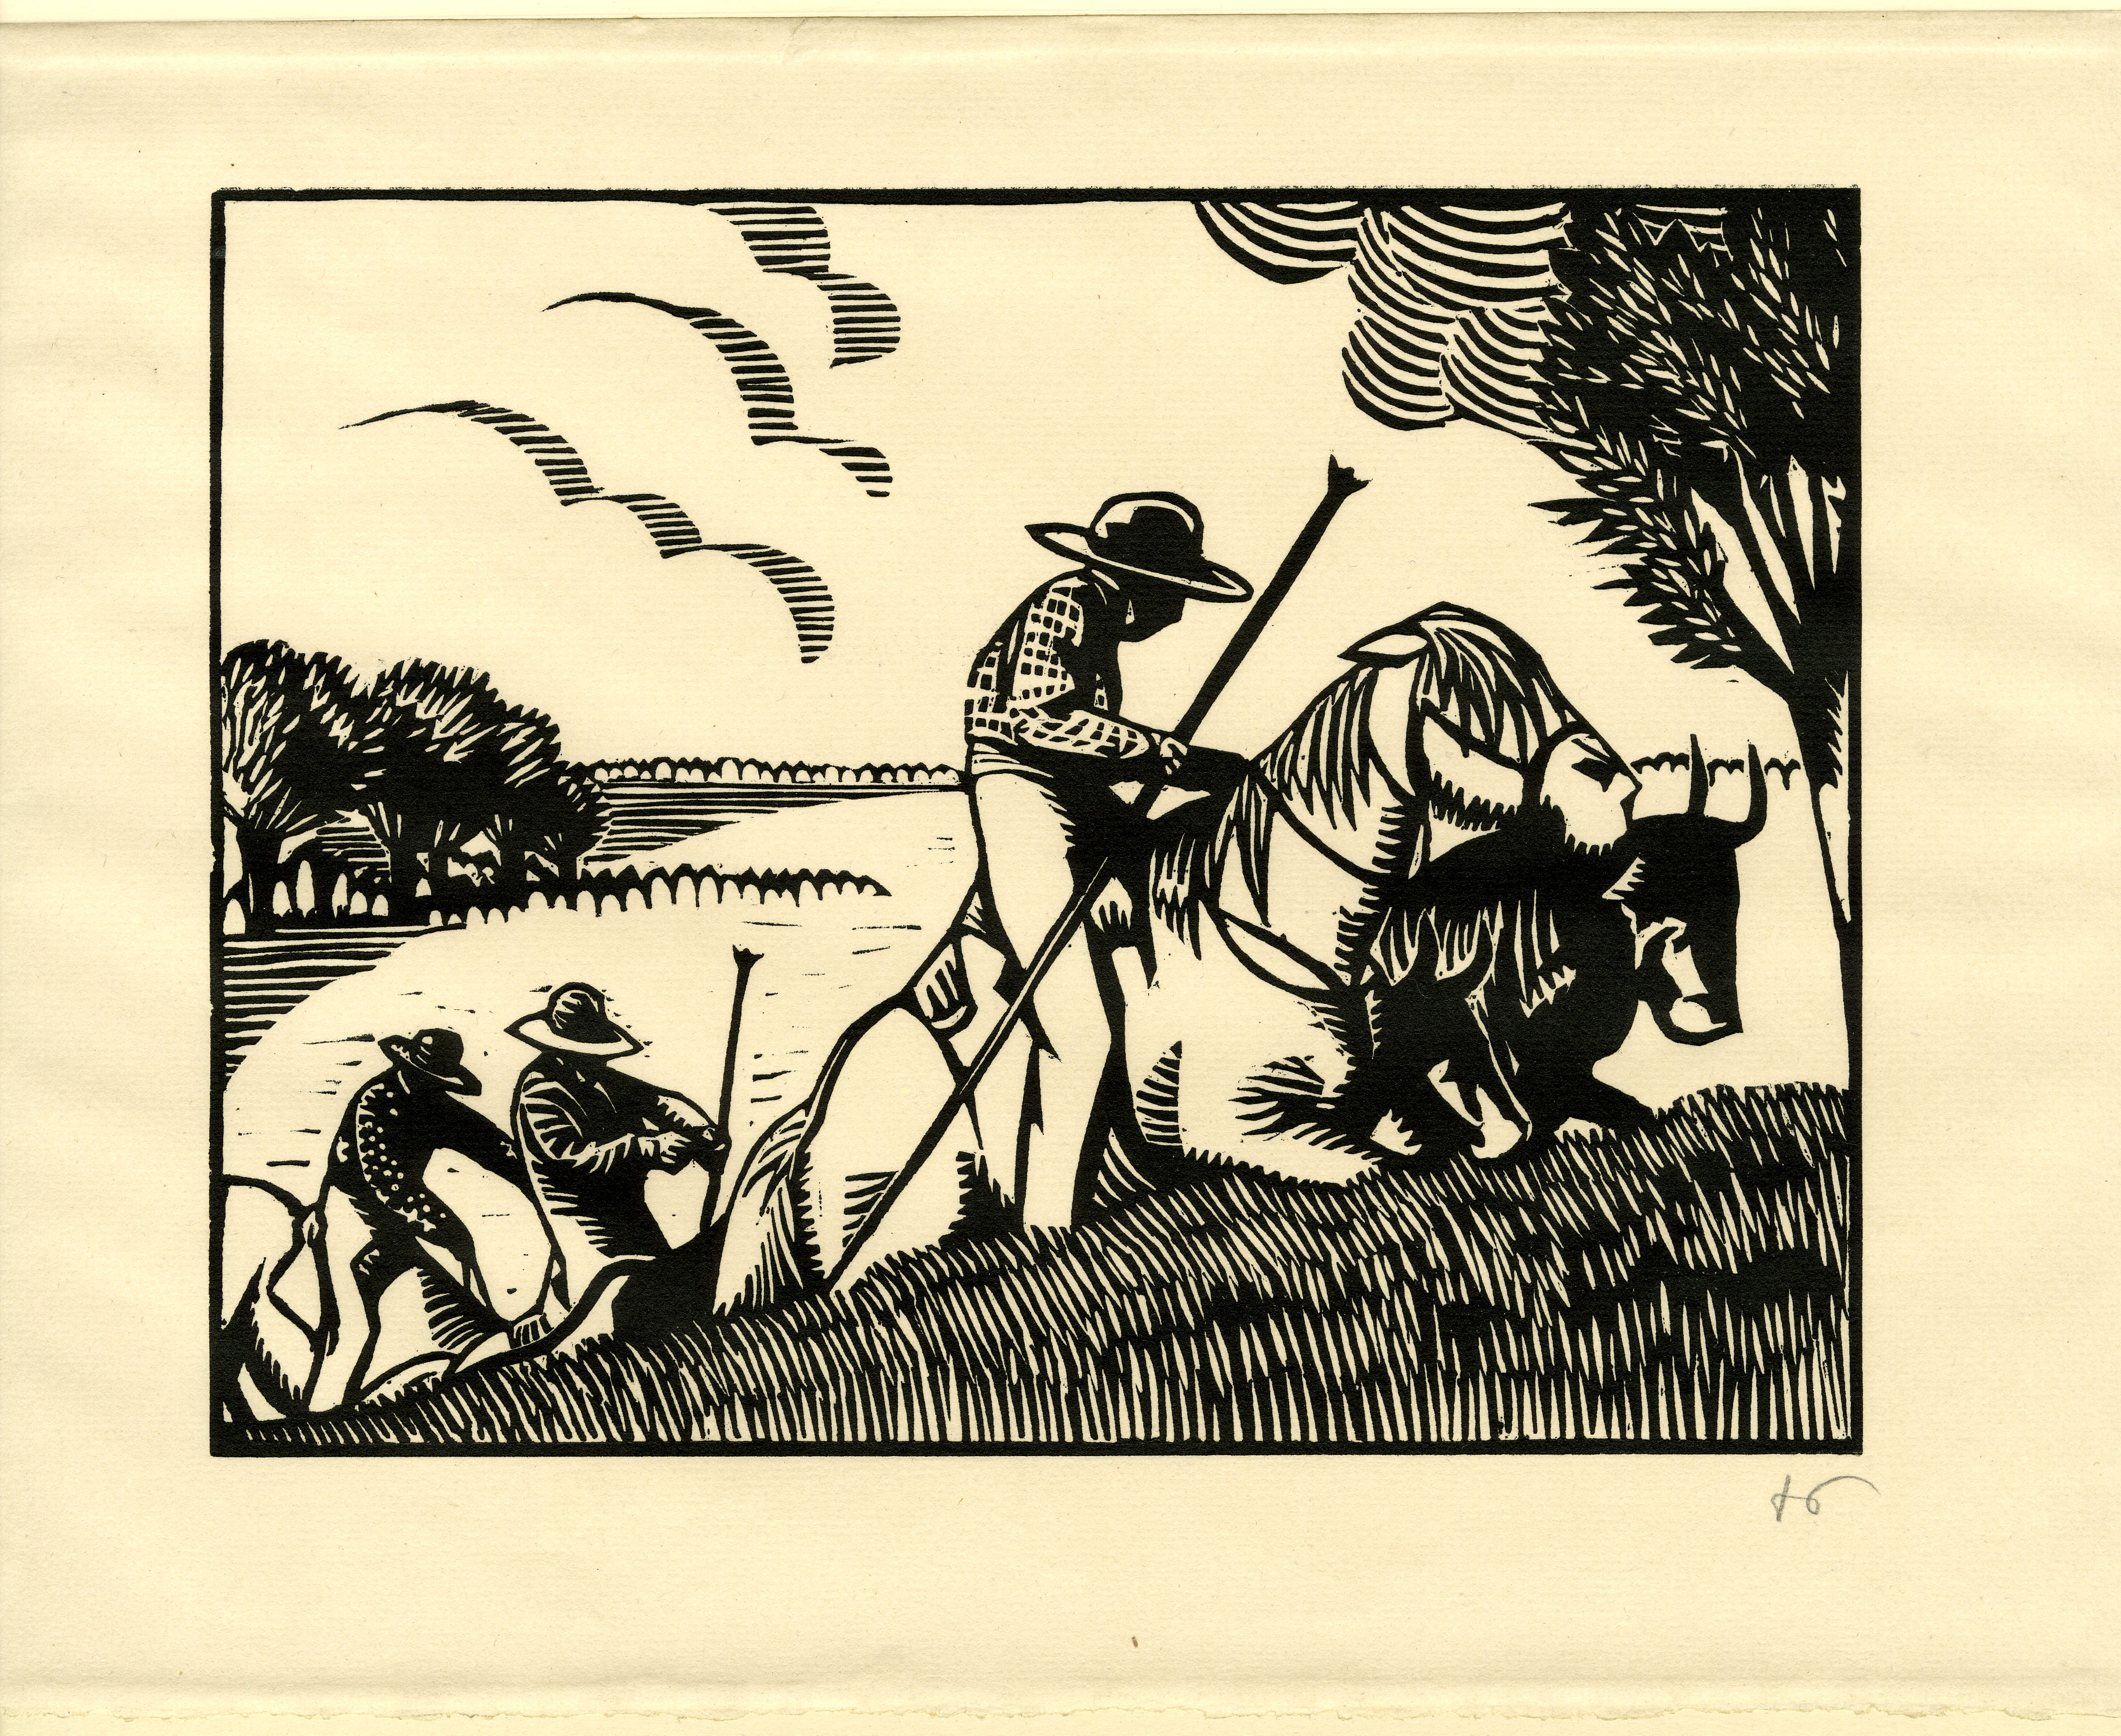 Group of men on horseback (1922)